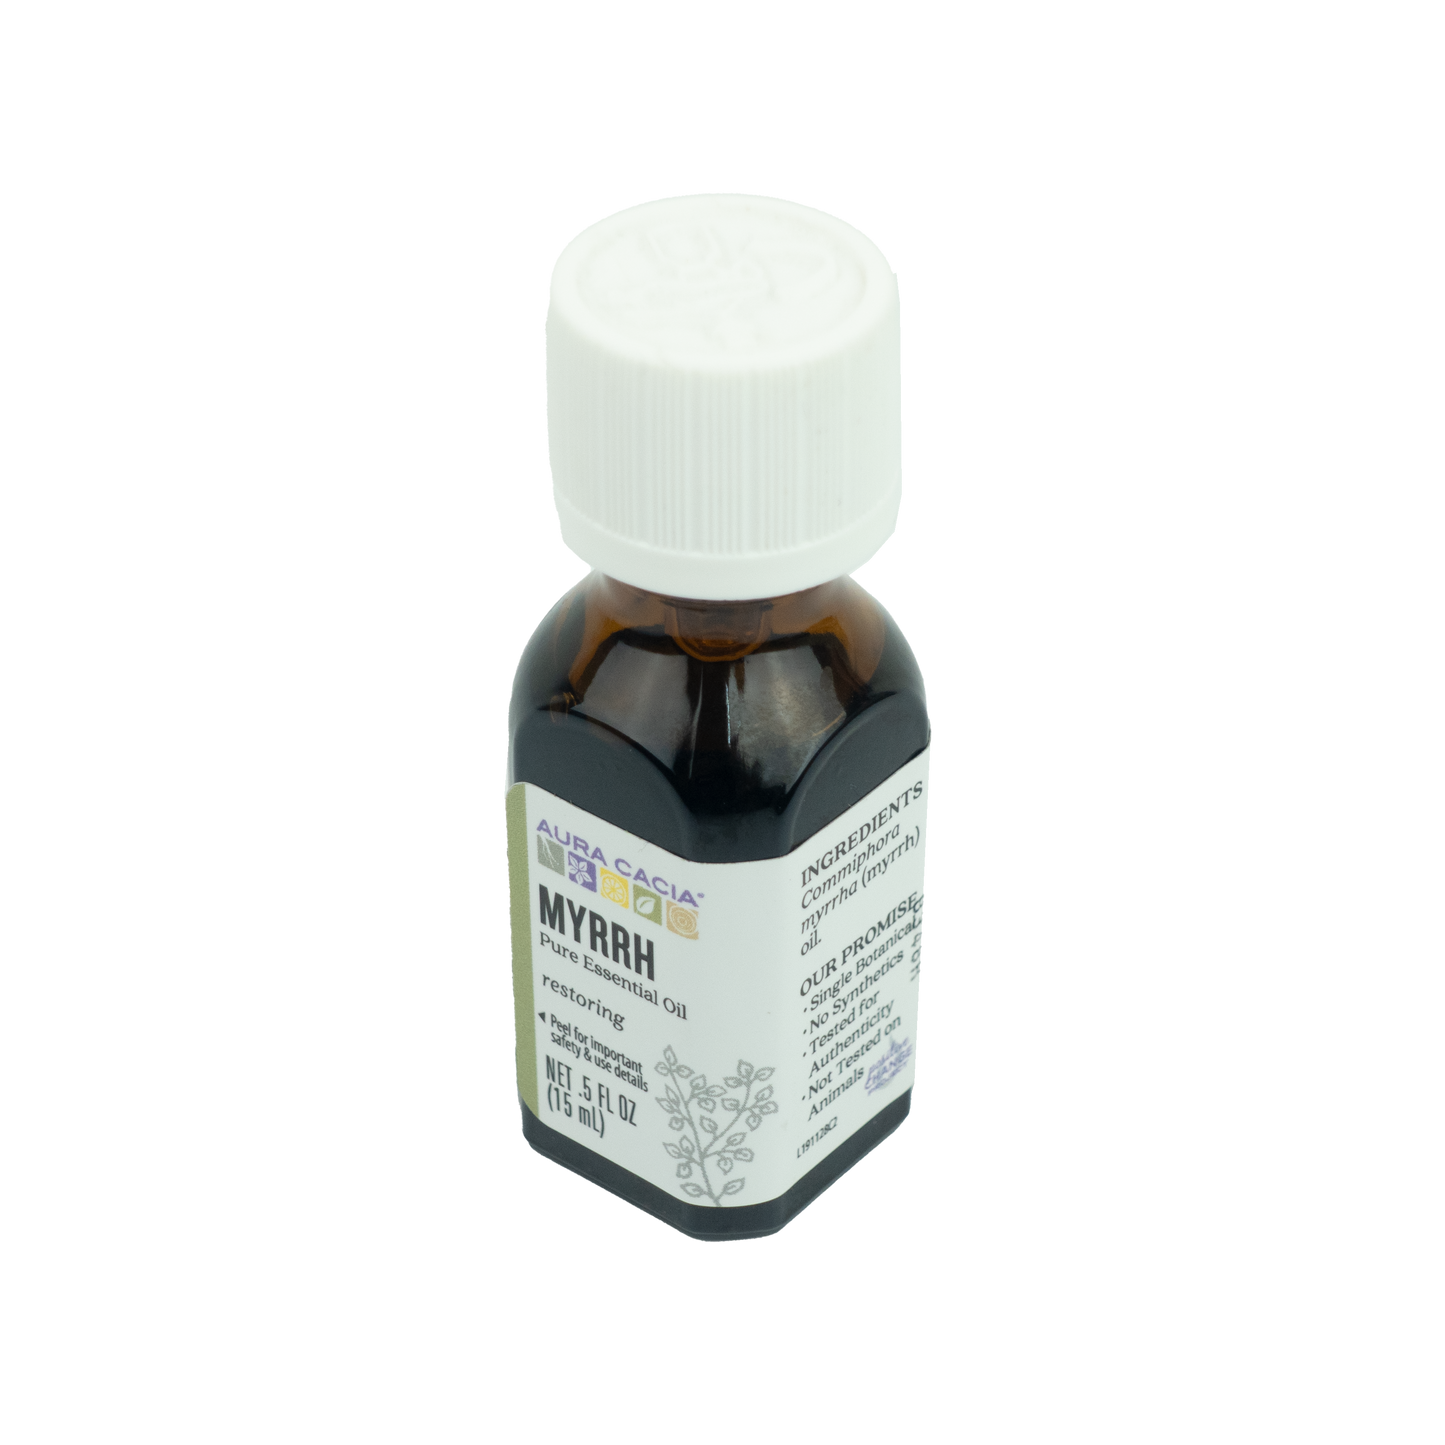 Aura Cacia - Myrrh Essential Oil (0.5 oz)